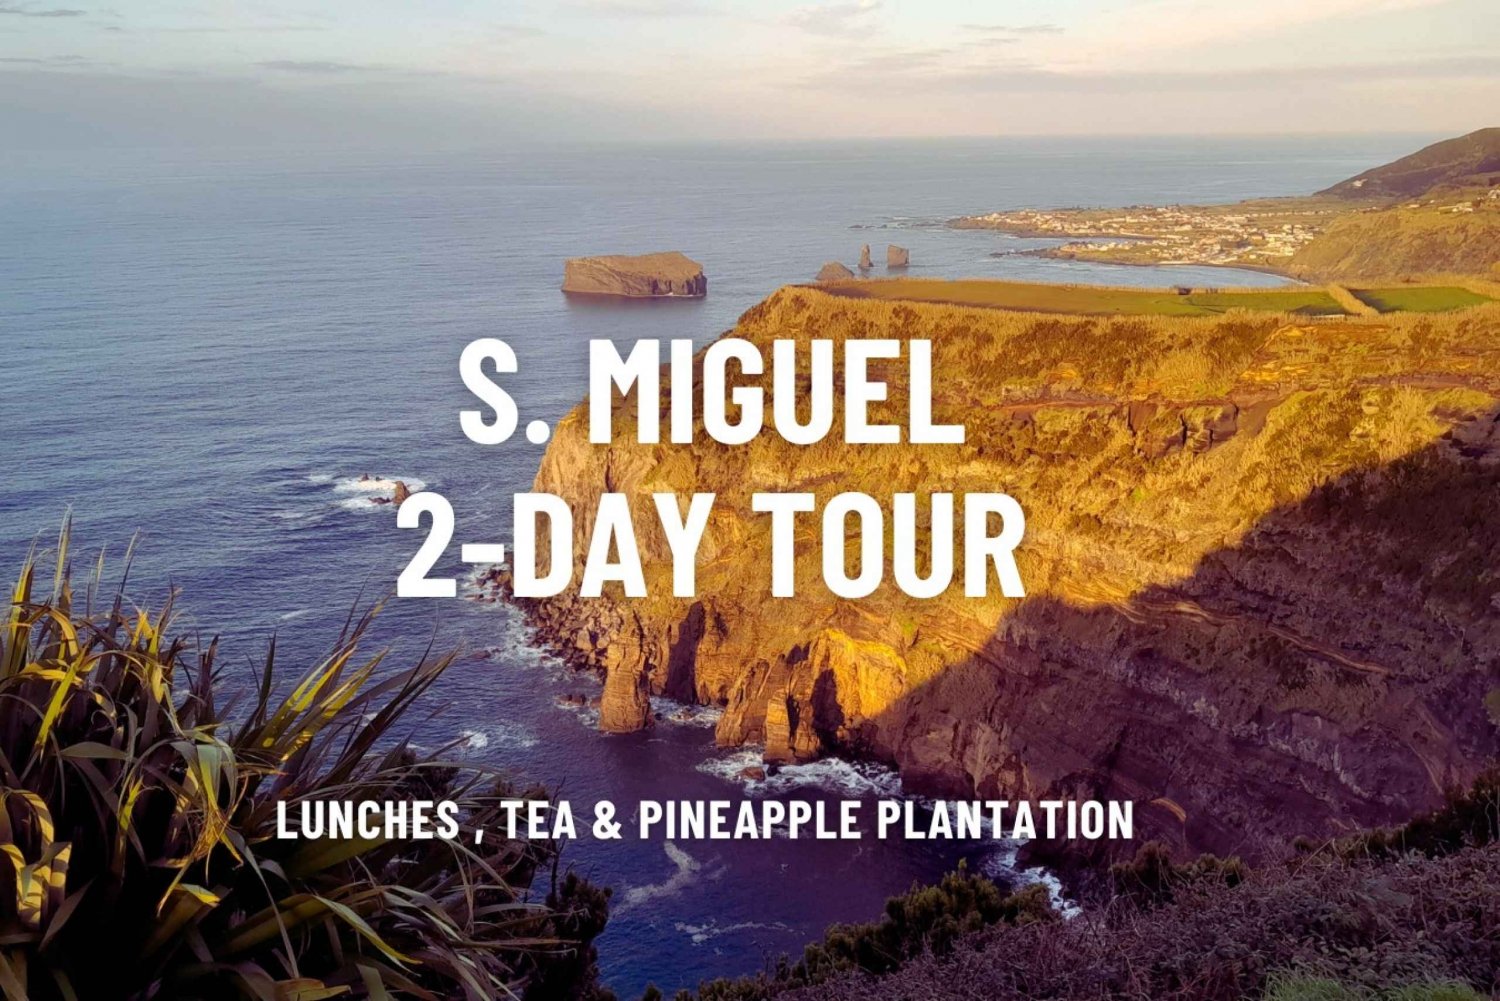 São Miguel: Excursão de 2 dias pelos destaques da ilha, incluindo almoços